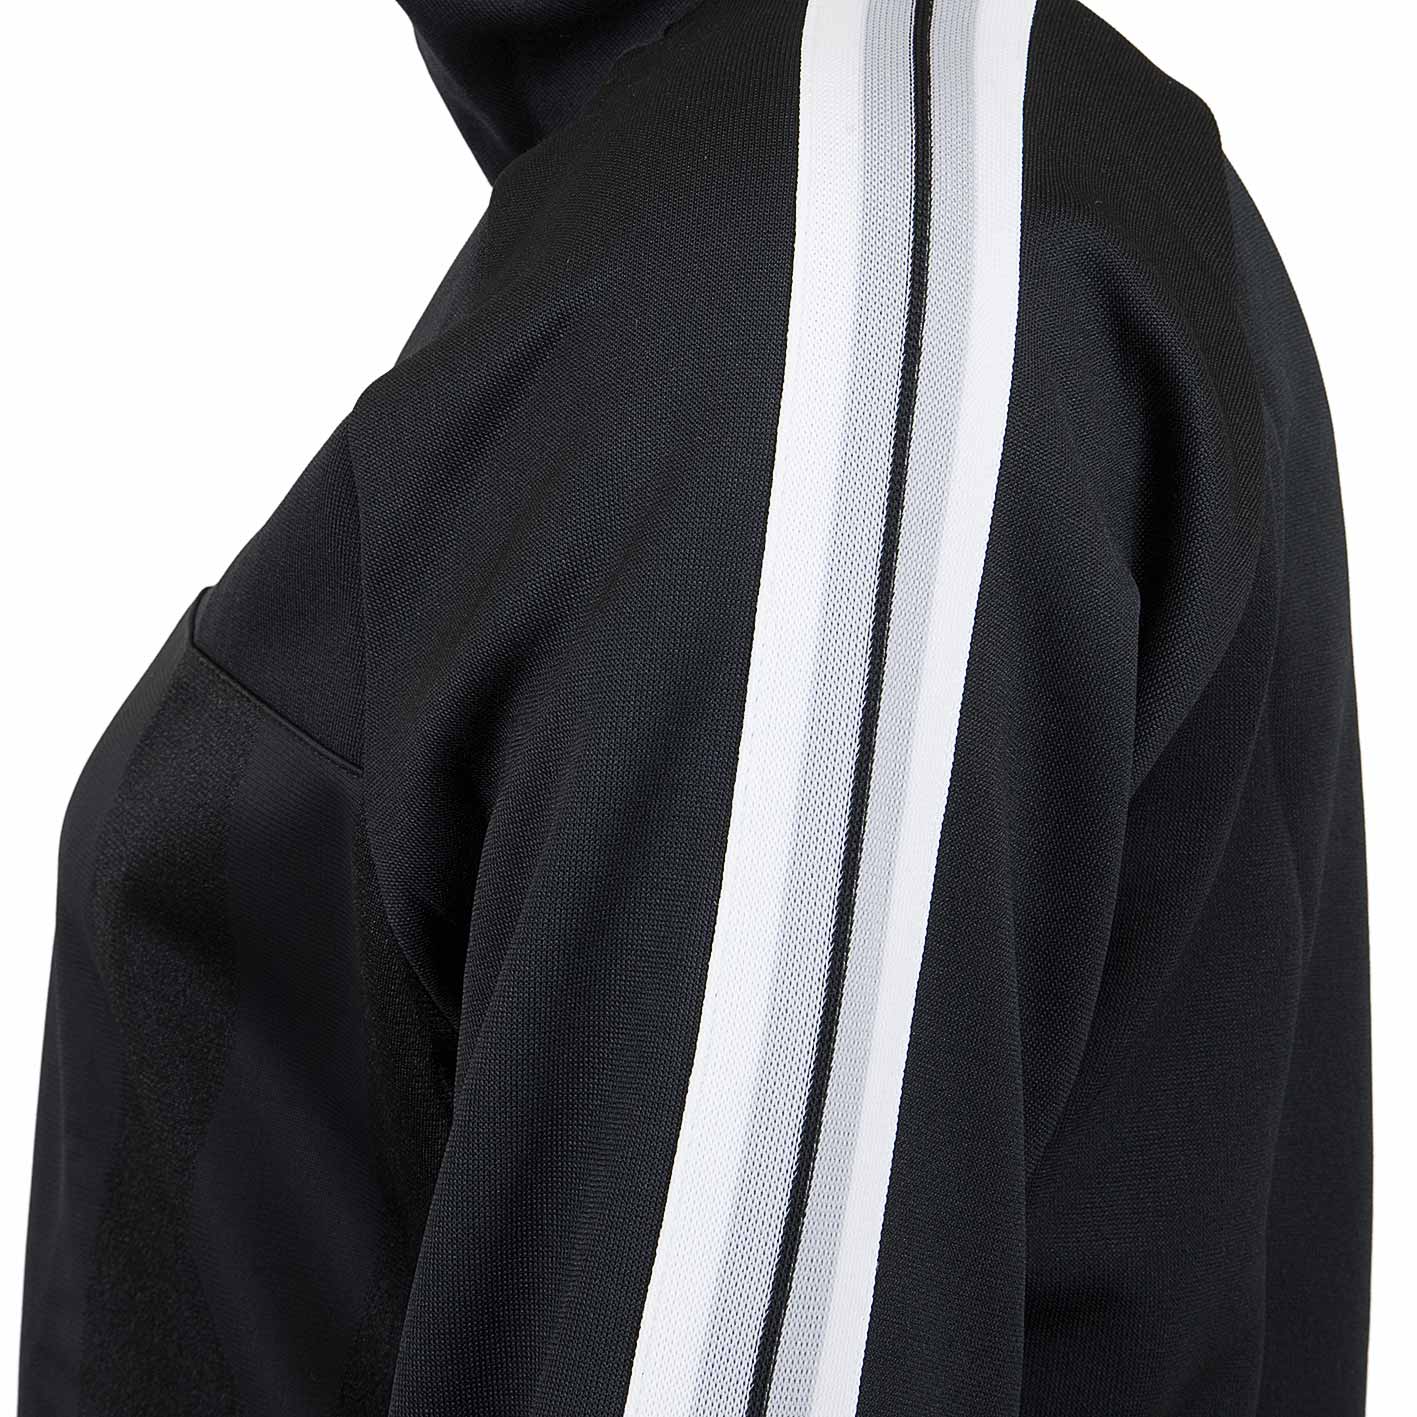 ☆ Nike Damen Trainingsjacke Shadow Stripe HZ schwarz/weiß - hier bestellen!